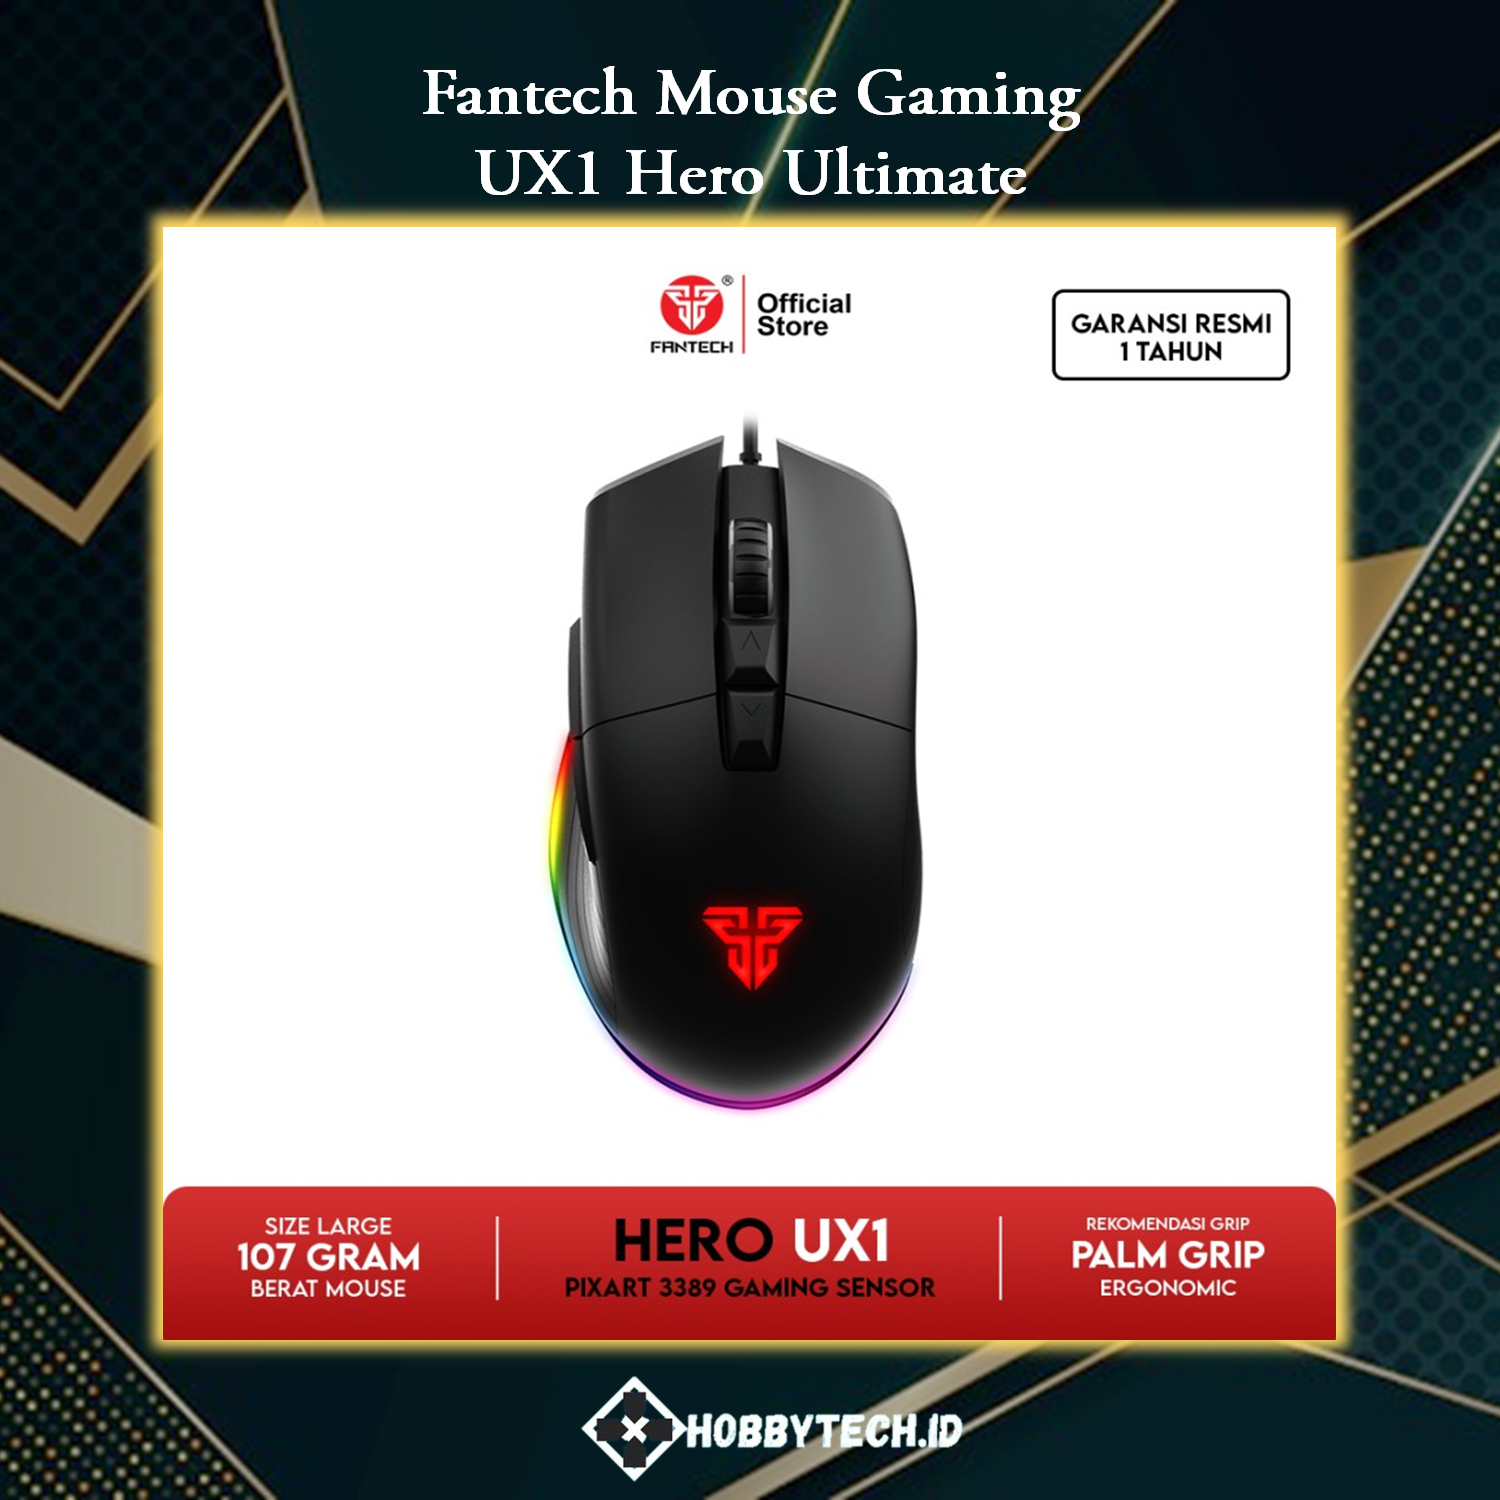 Fantech UX1 HERO Ultimate Gaming Mouse PIXART 3389 Sensor